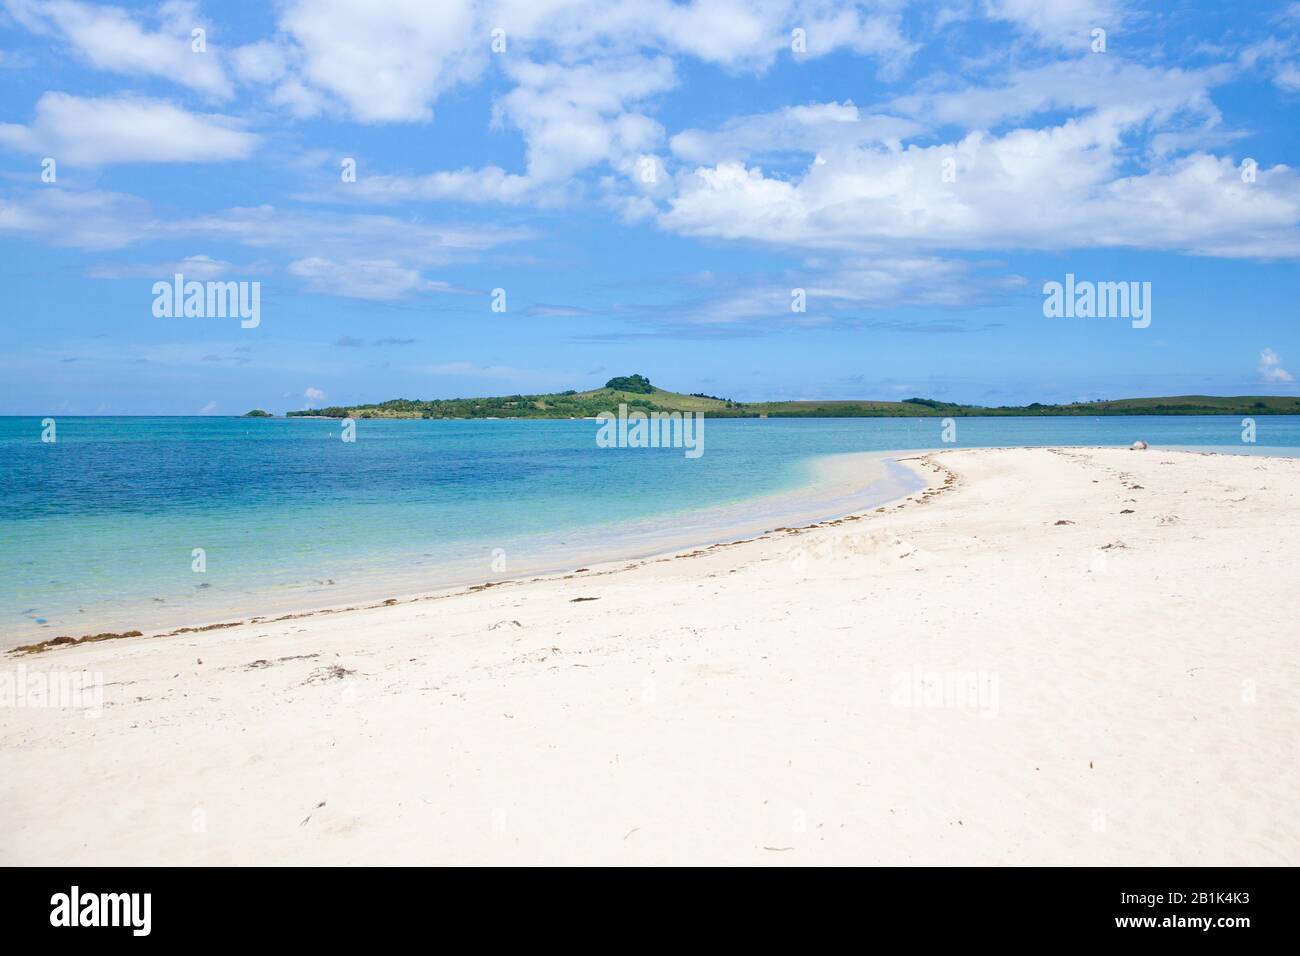 Tropische Insel mit einer Lagune und weißem Sandstrand. Caramoan-Inseln, Philippinen. Cotivas Island Cottage. Sommer- und Urlaubskonzept. Stockfoto